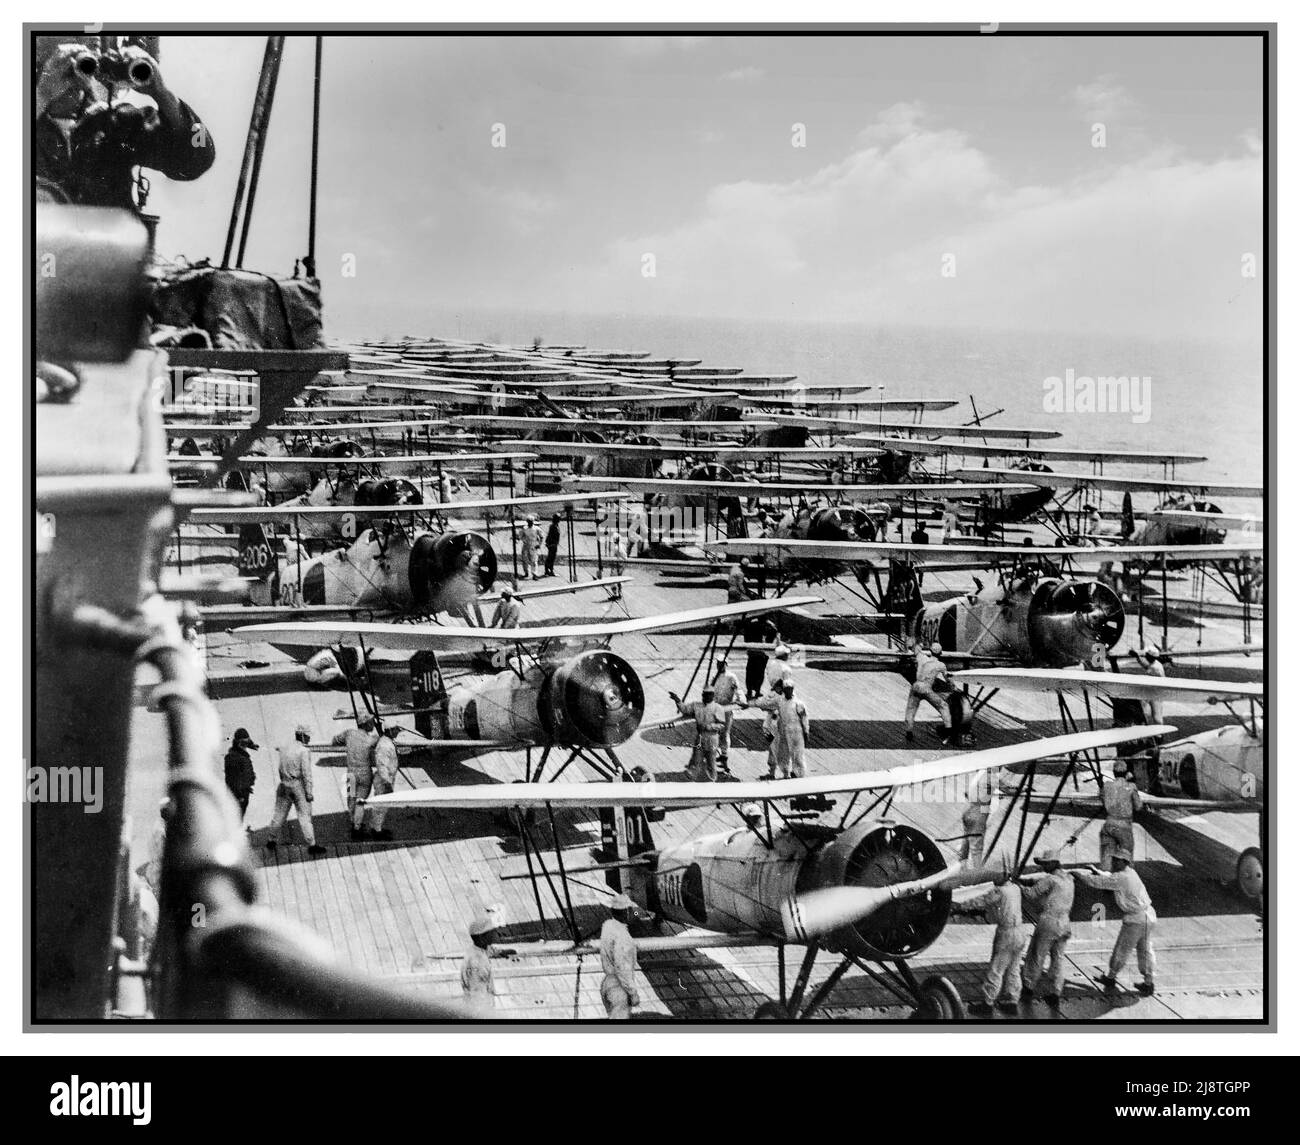 PEARL HARBOR PROBE die imperiale japanische Marine-Flugzeugträgerin Kaga führt 1937 Flugoperationen durch. Auf dem Deck befinden sich Mitsubishi B2M Typ 89, Nakajima A2N Typ 90 und Aichi D1A1 Typ 94. Stockfoto